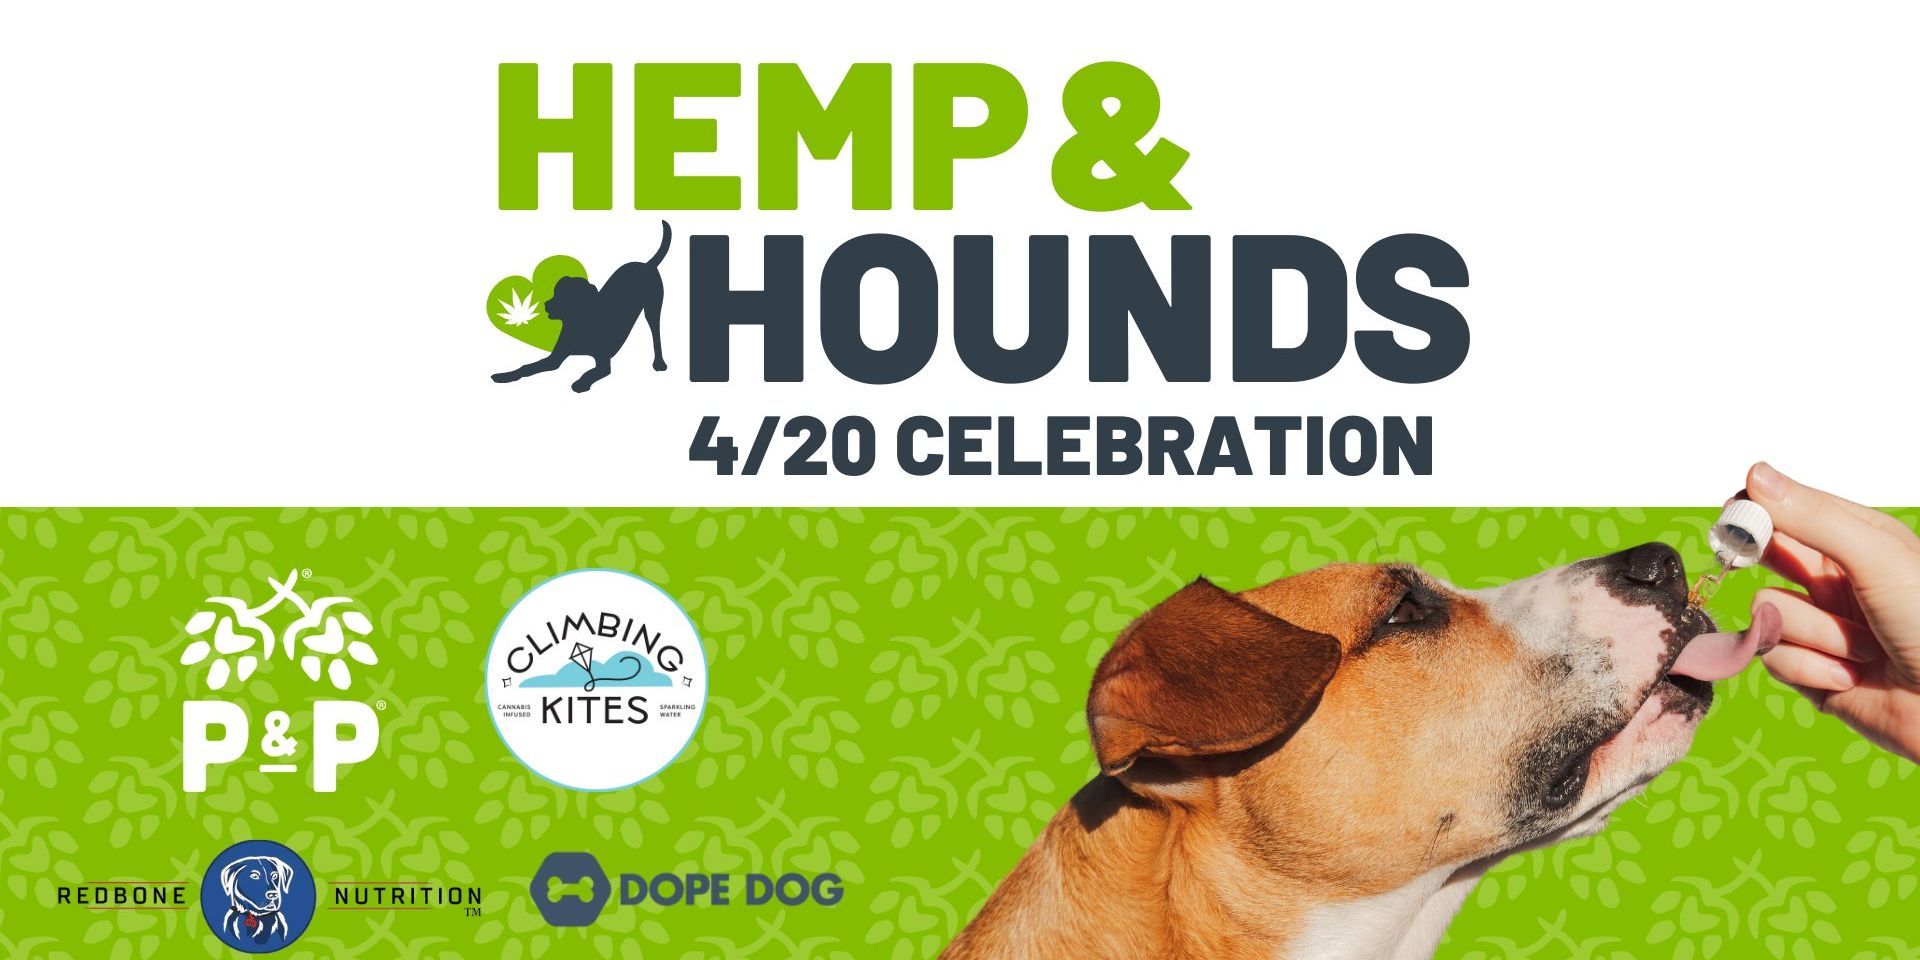 Hemp & Hounds promotional image